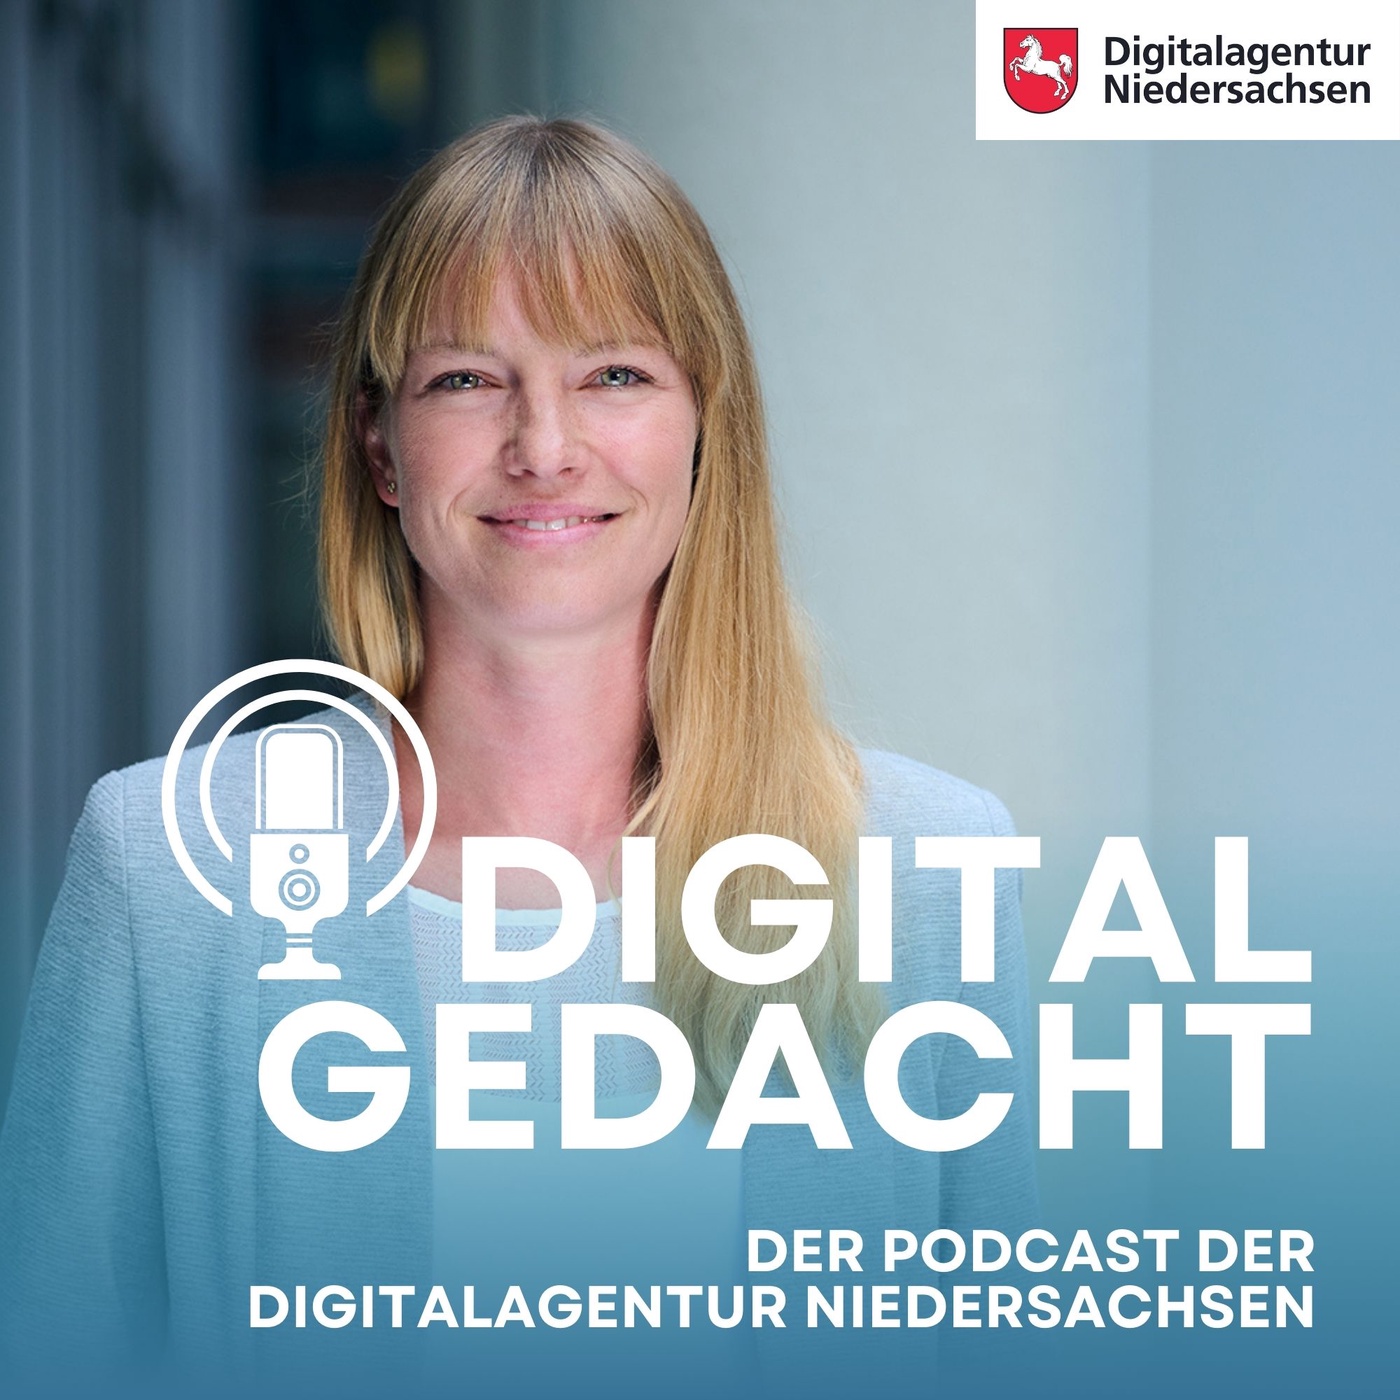 Digital Gedacht - Der Podcast der Digitalagentur Niedersachsen